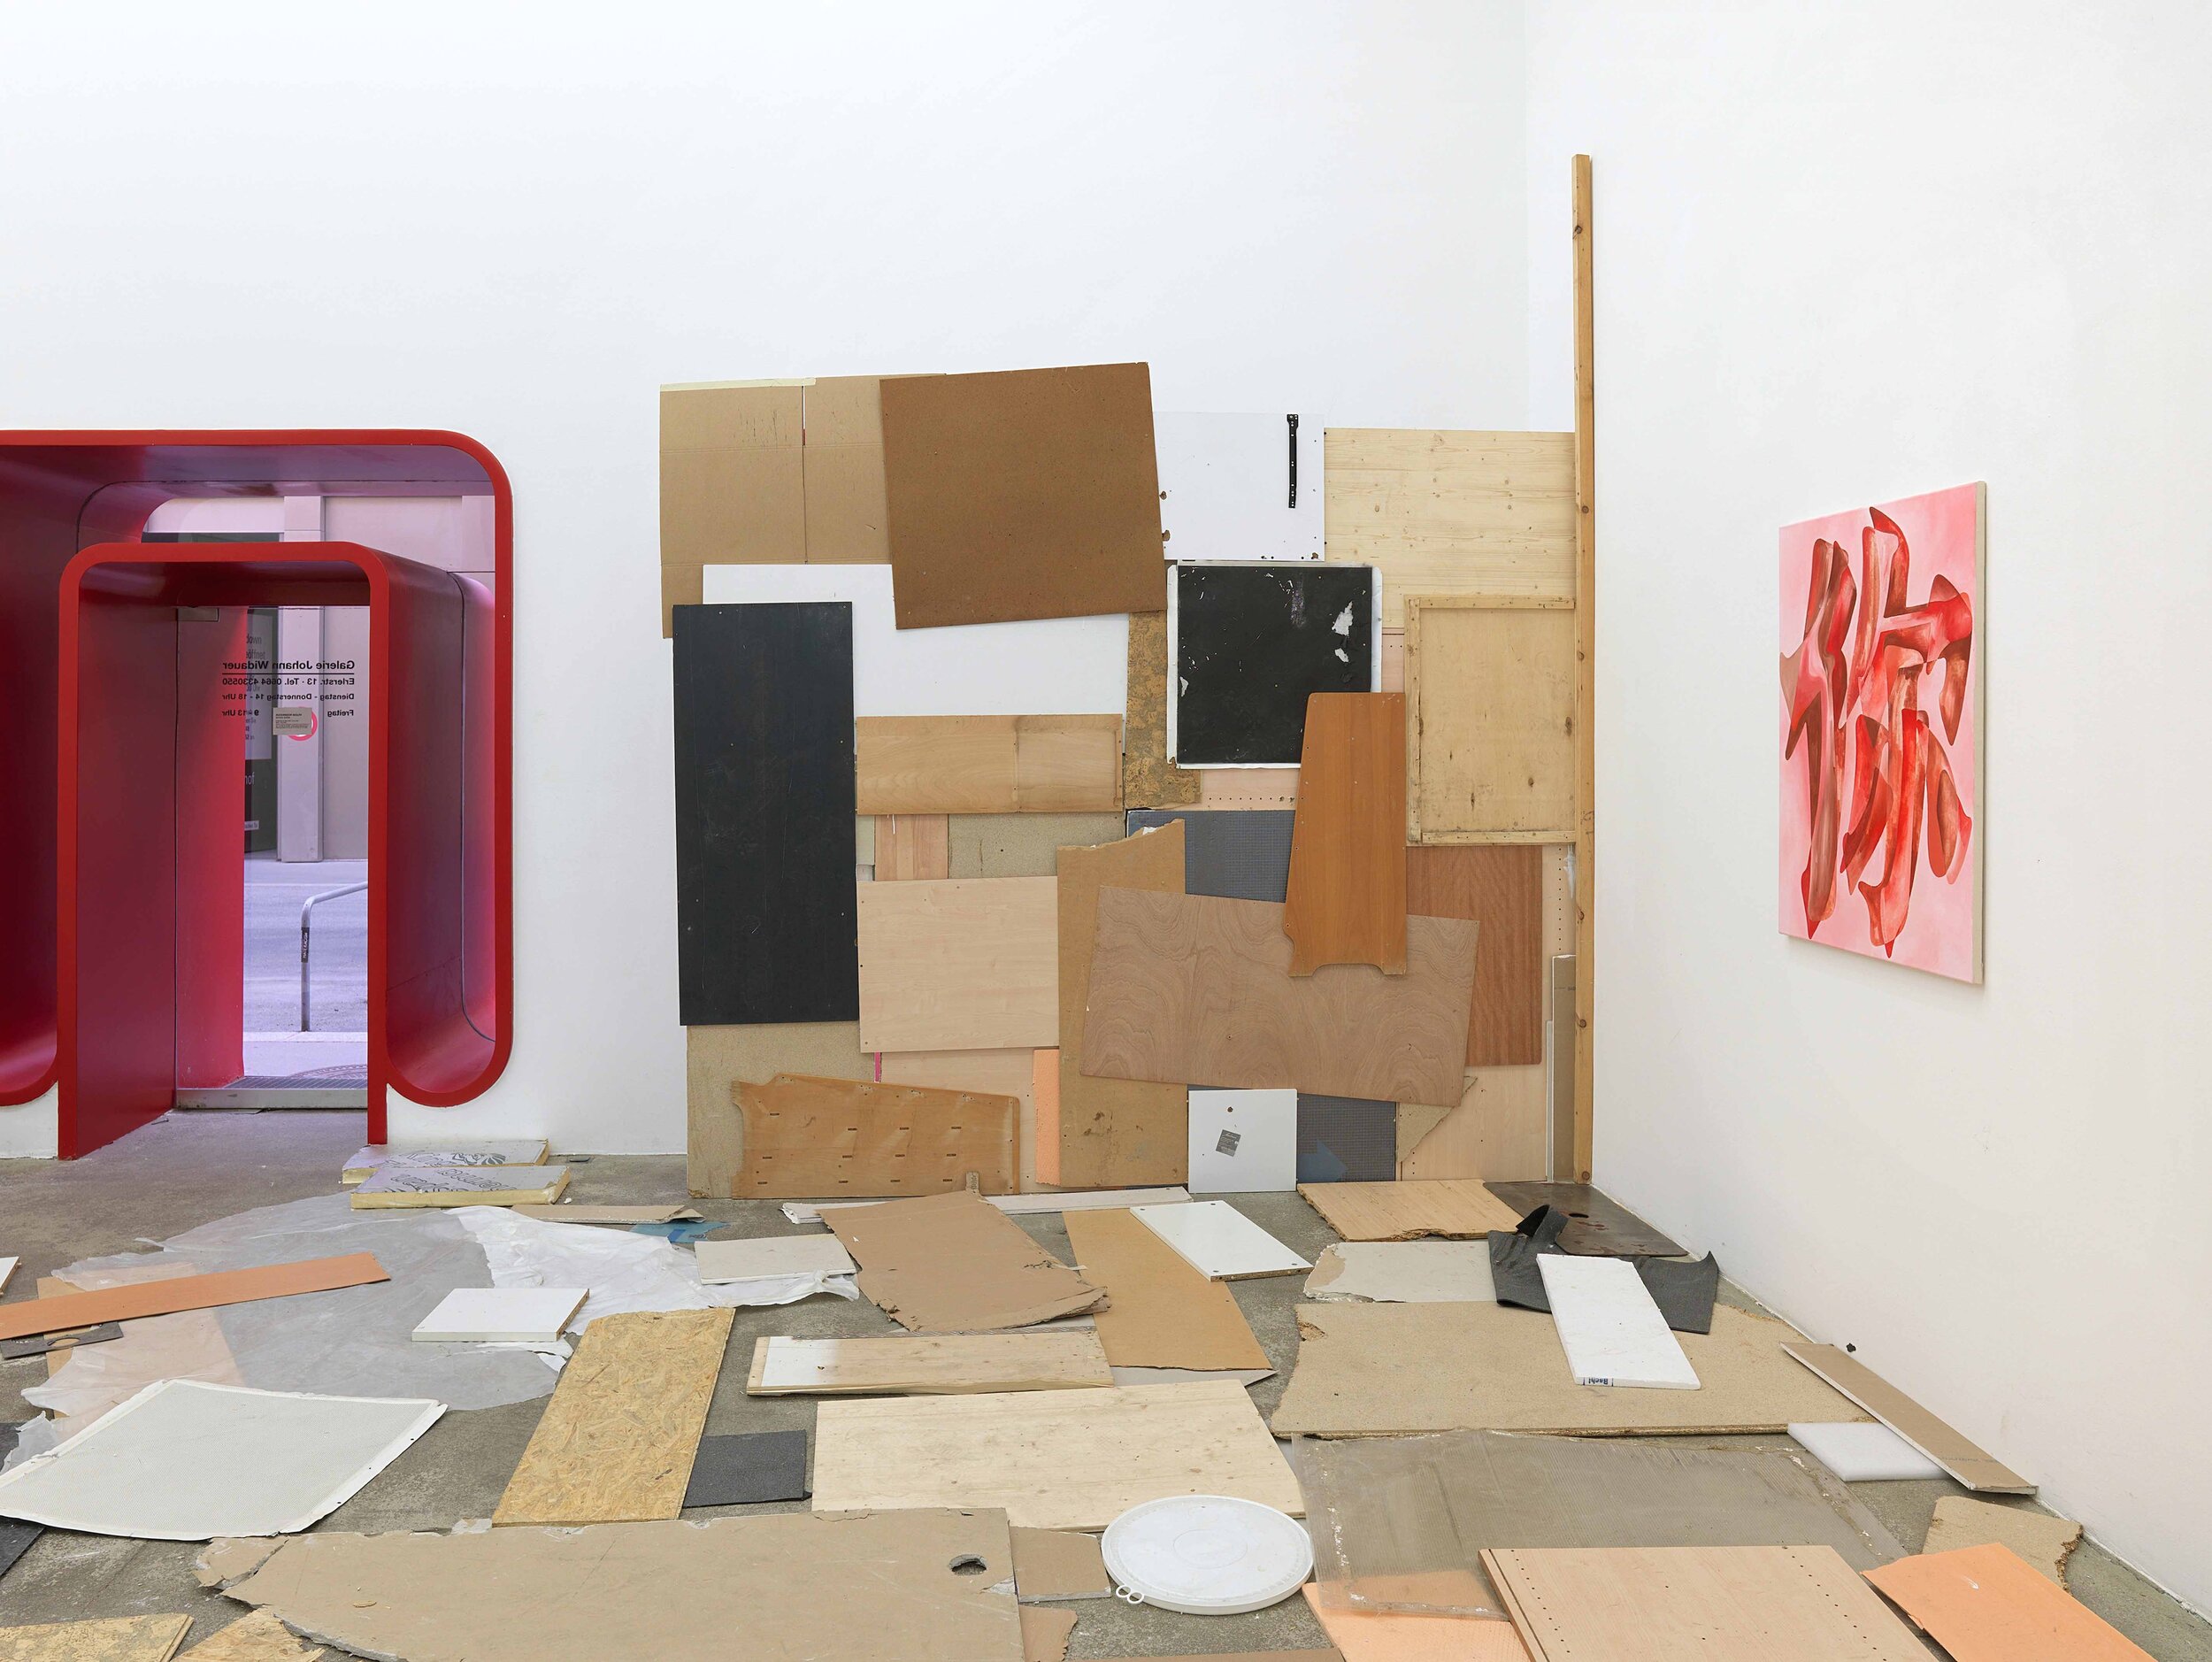 Galerie+Johann+Widauer-Exhibition-2021-Alexander-Wolff-11.jpg